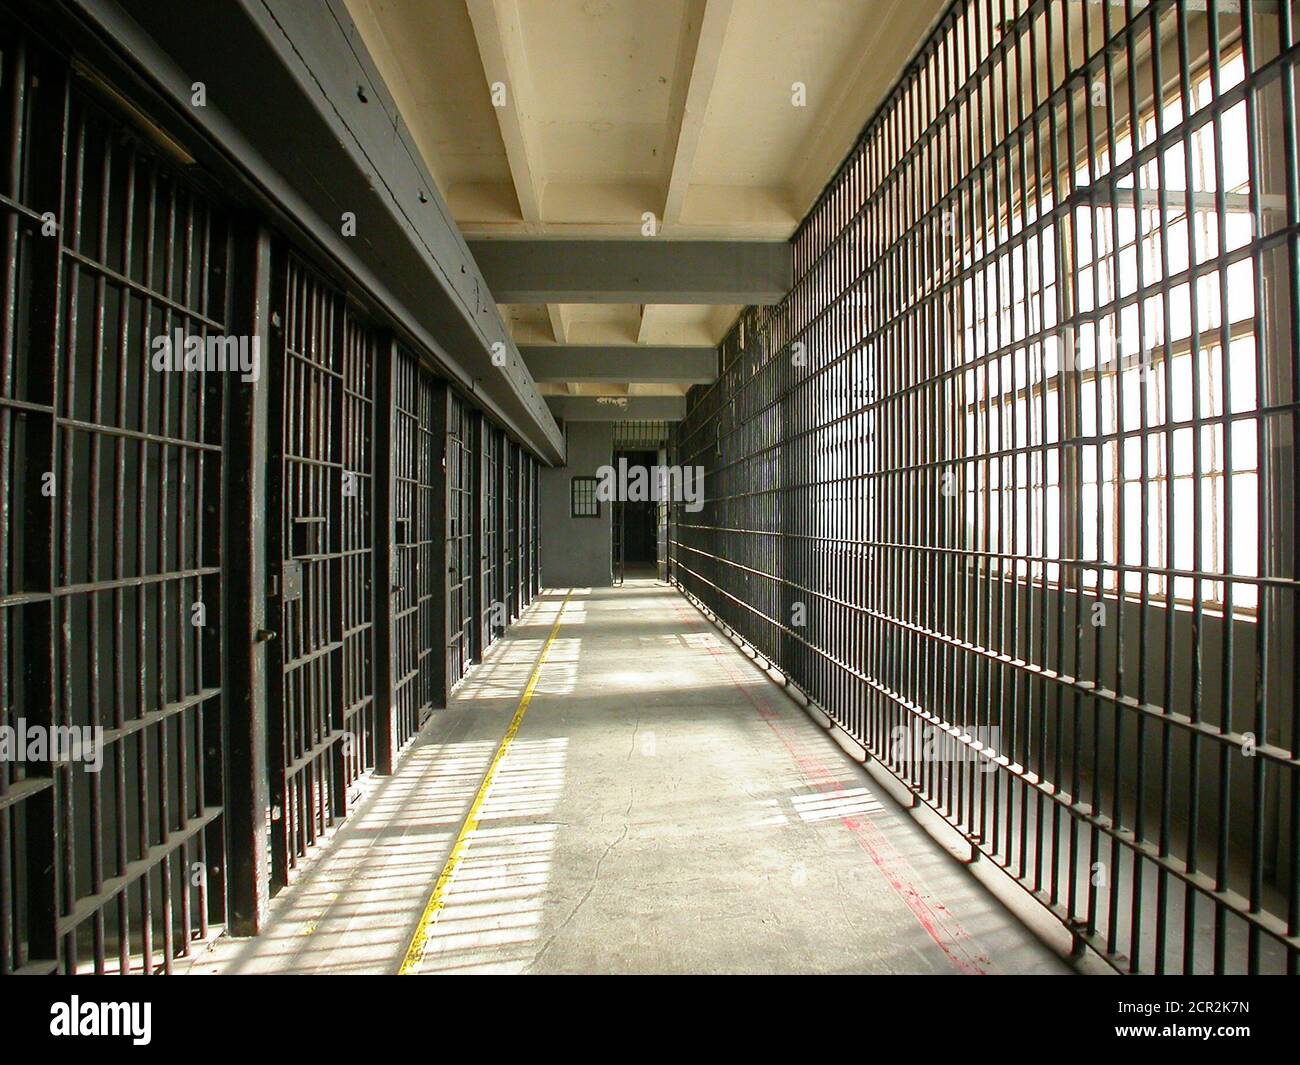 Innenansicht eines geschlossenen Gefängniszellenblocks in einer ungenutzten heruntergekommenen staatlichen Einrichtung. Stockfoto